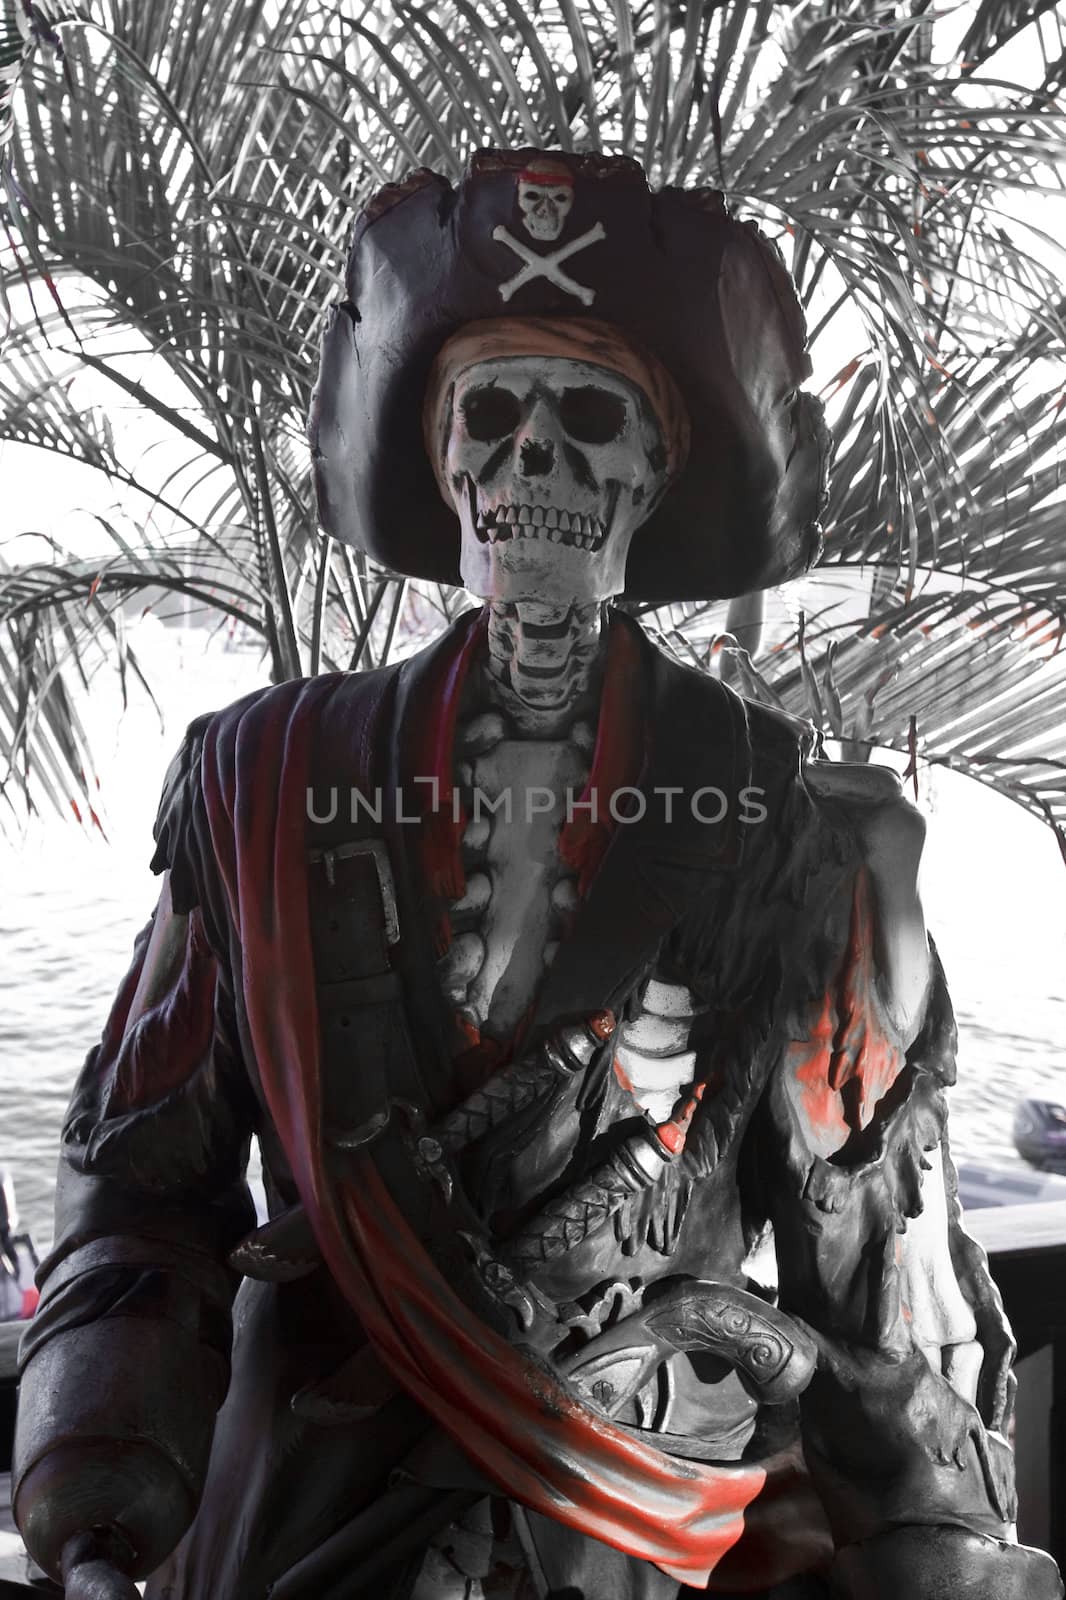 Ex pirate in caribbean island